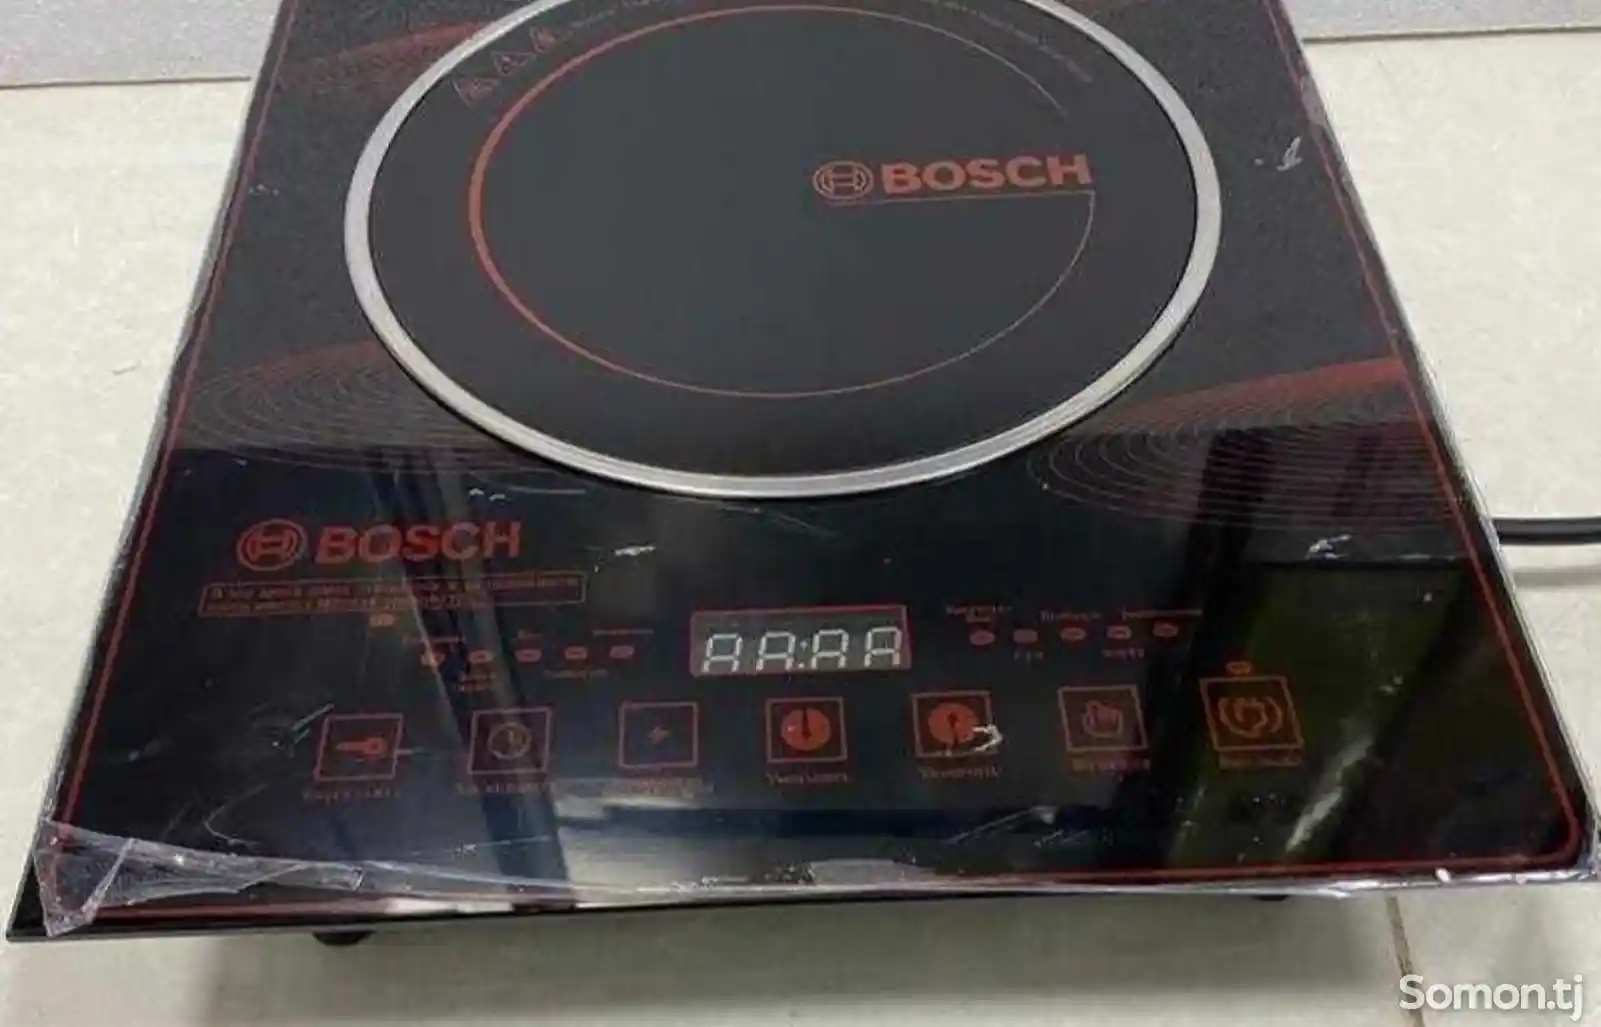 Сенсорная плита Bosch 7032-3